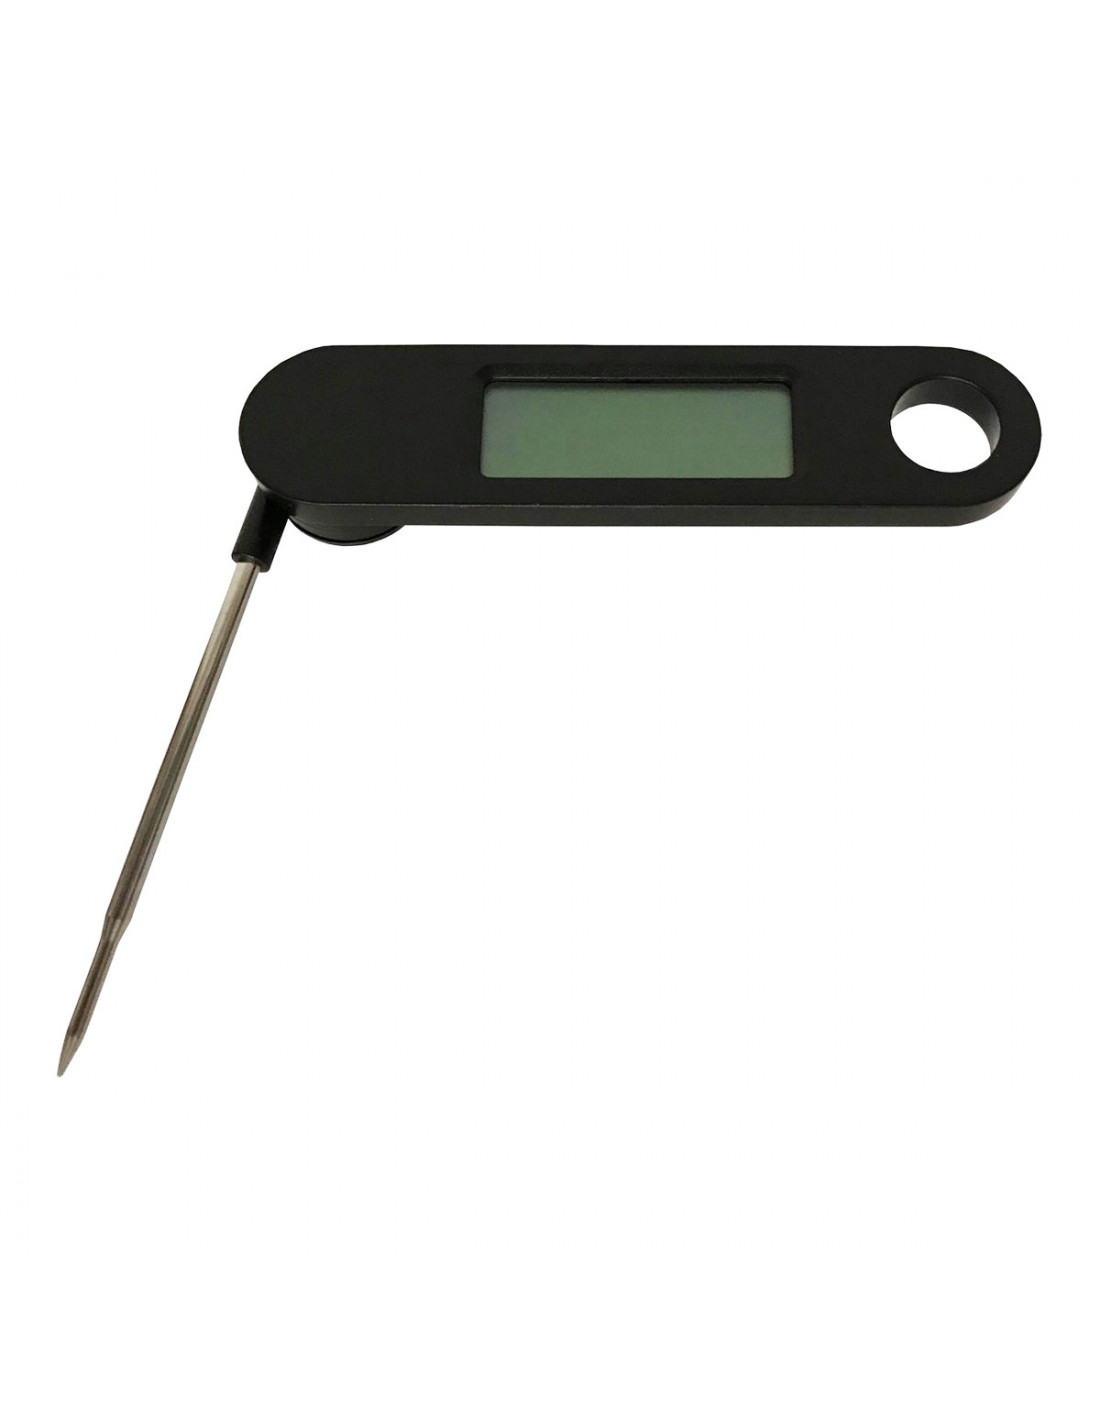 Termometro digitale da cucina con sonda Vaggan in offerta su